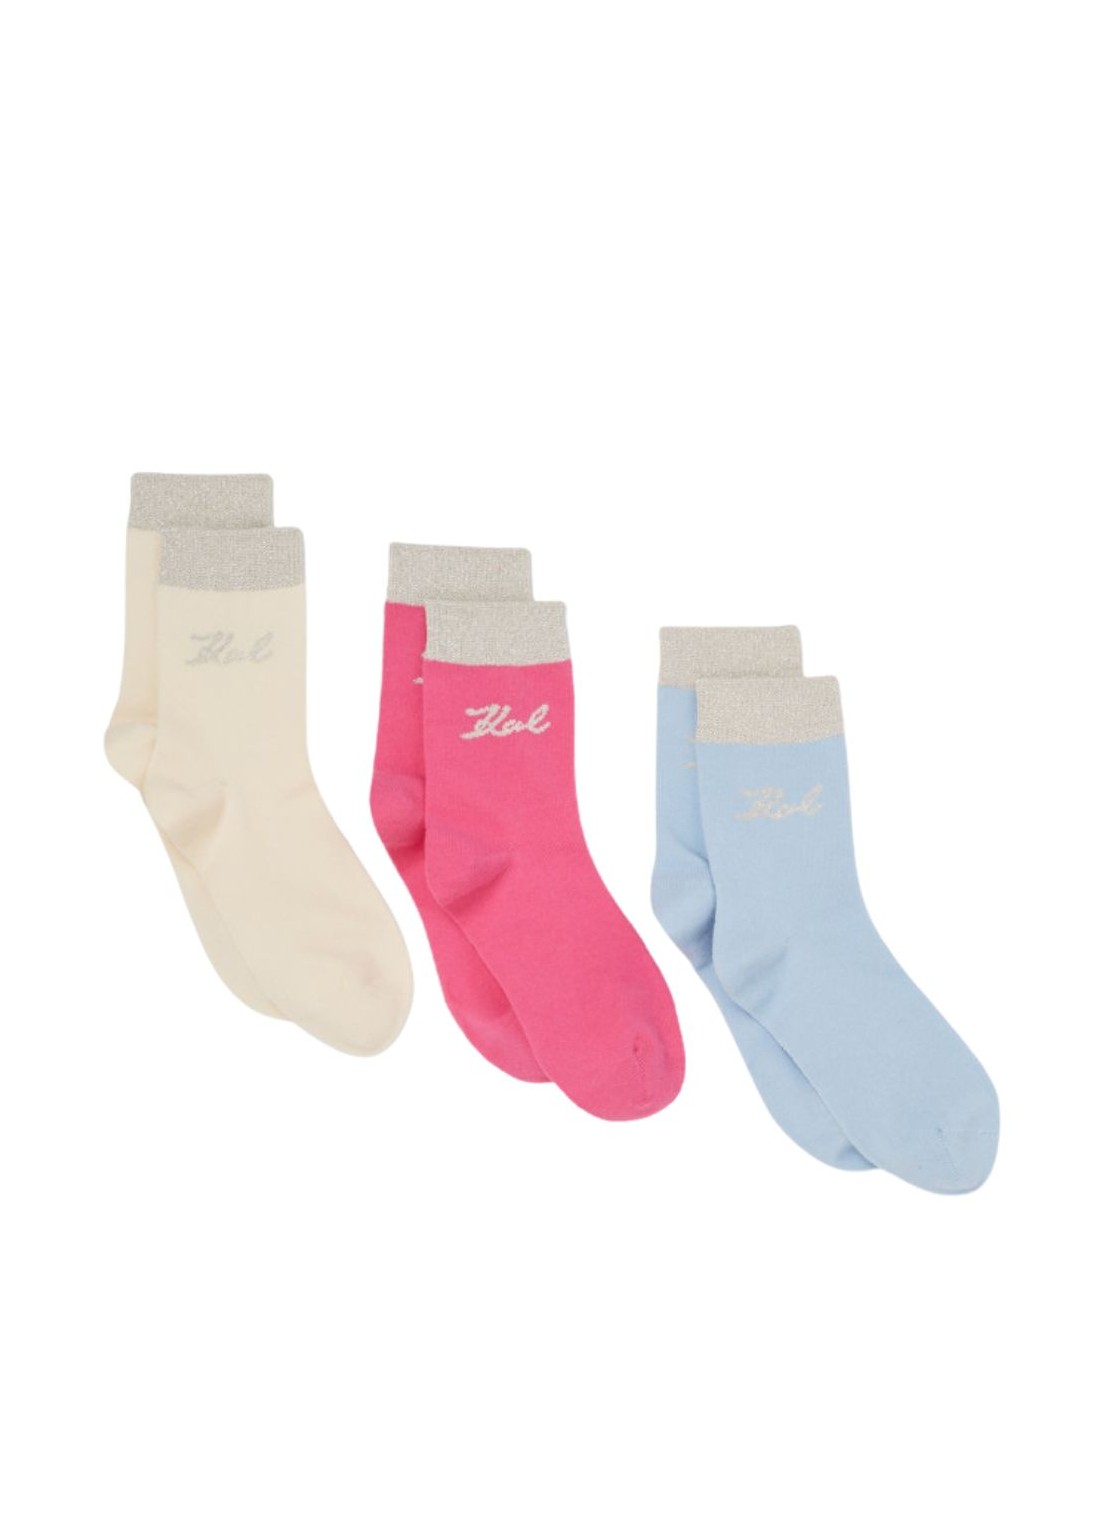 Calcetines karl lagerfeld socks womank/signature mid lngth socks 3p - 240w6002 325 talla multi
 